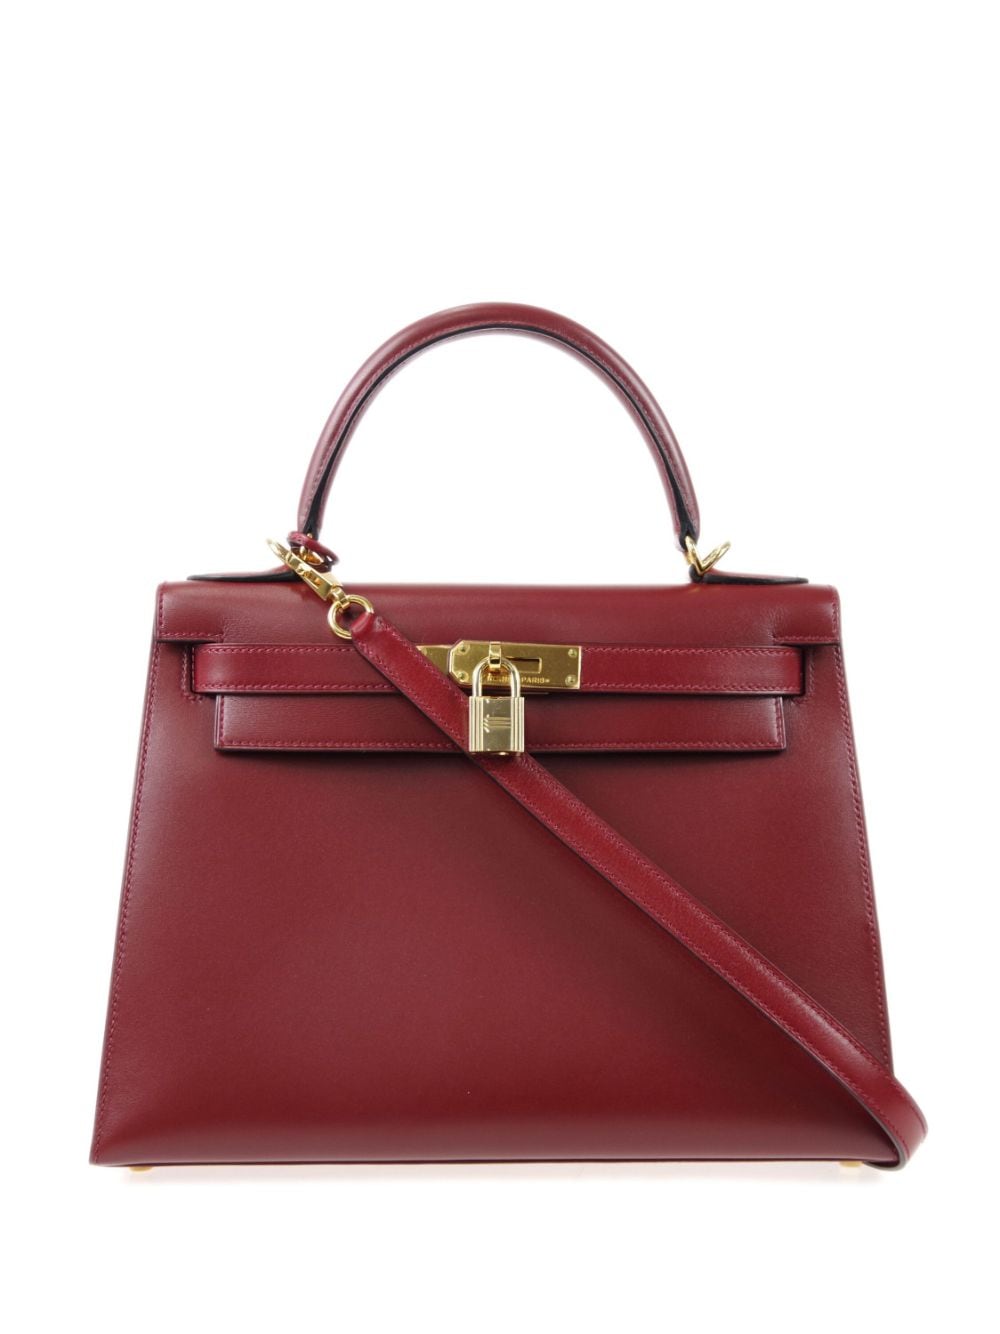 Hermès 2003 Pre-owned Kelly 28 Sellier Tote Bag - Red